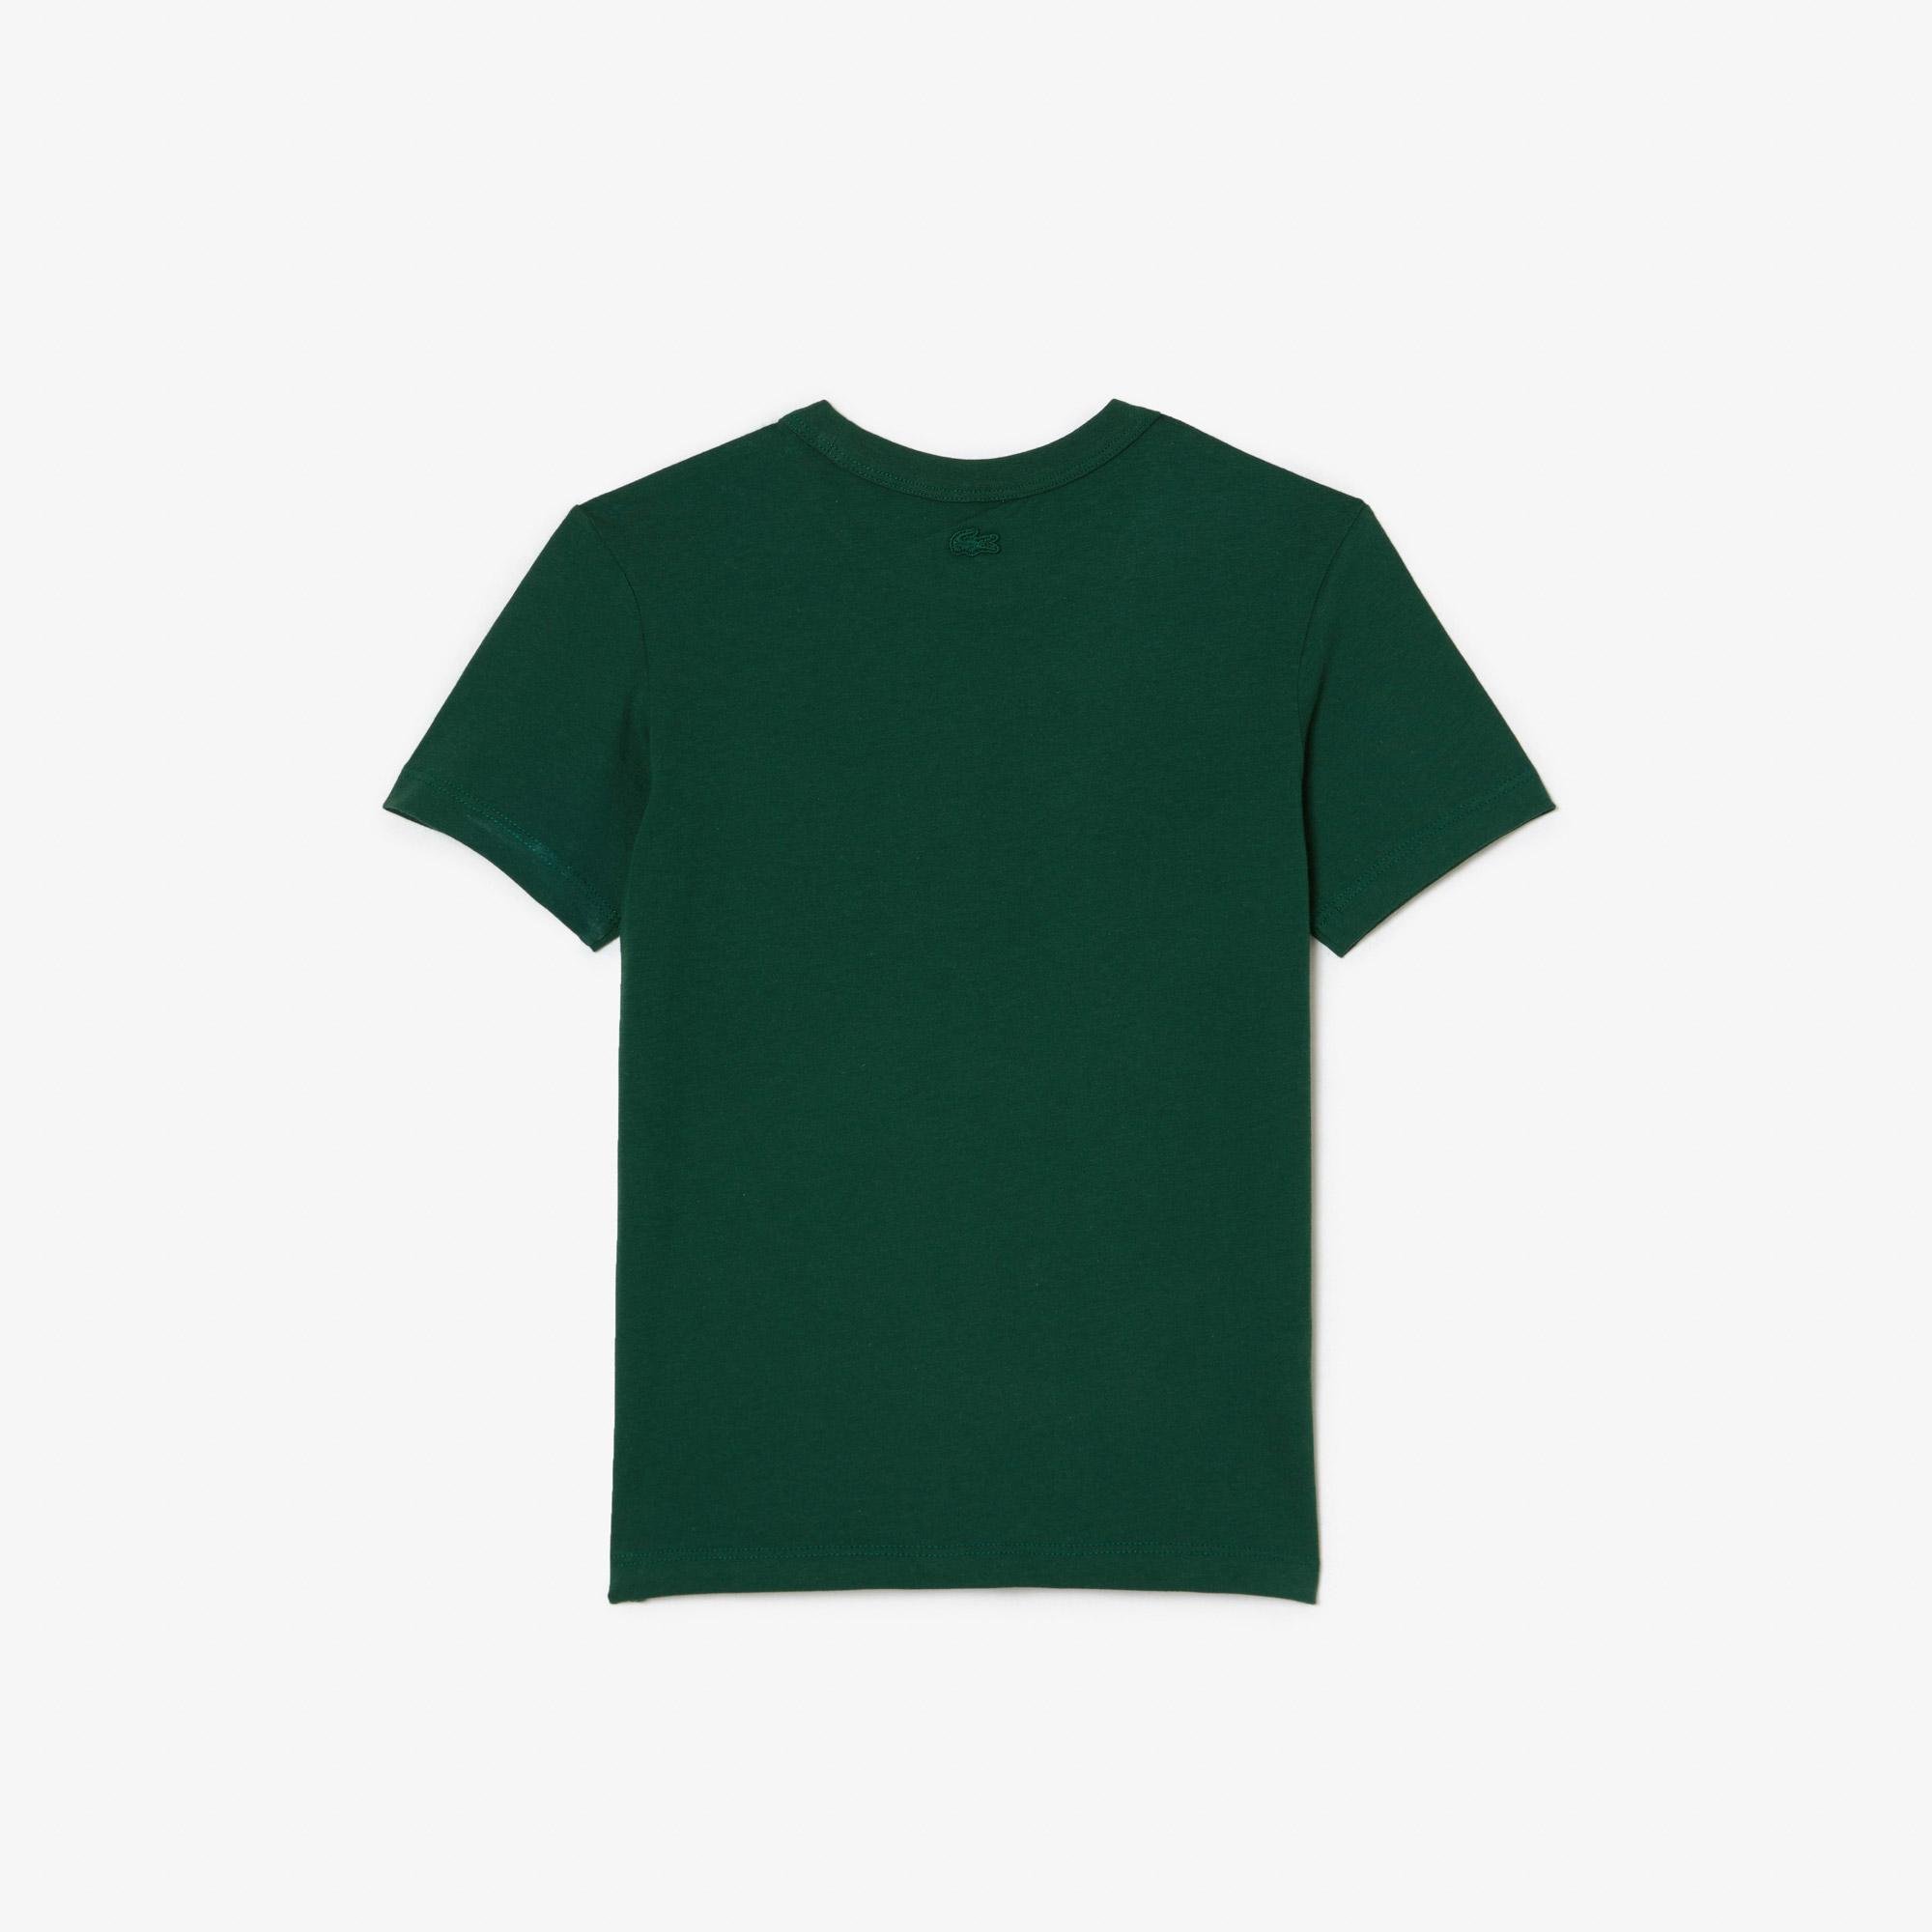 Lacoste x Netflix dětské tričko z organické bavlny s potiskem